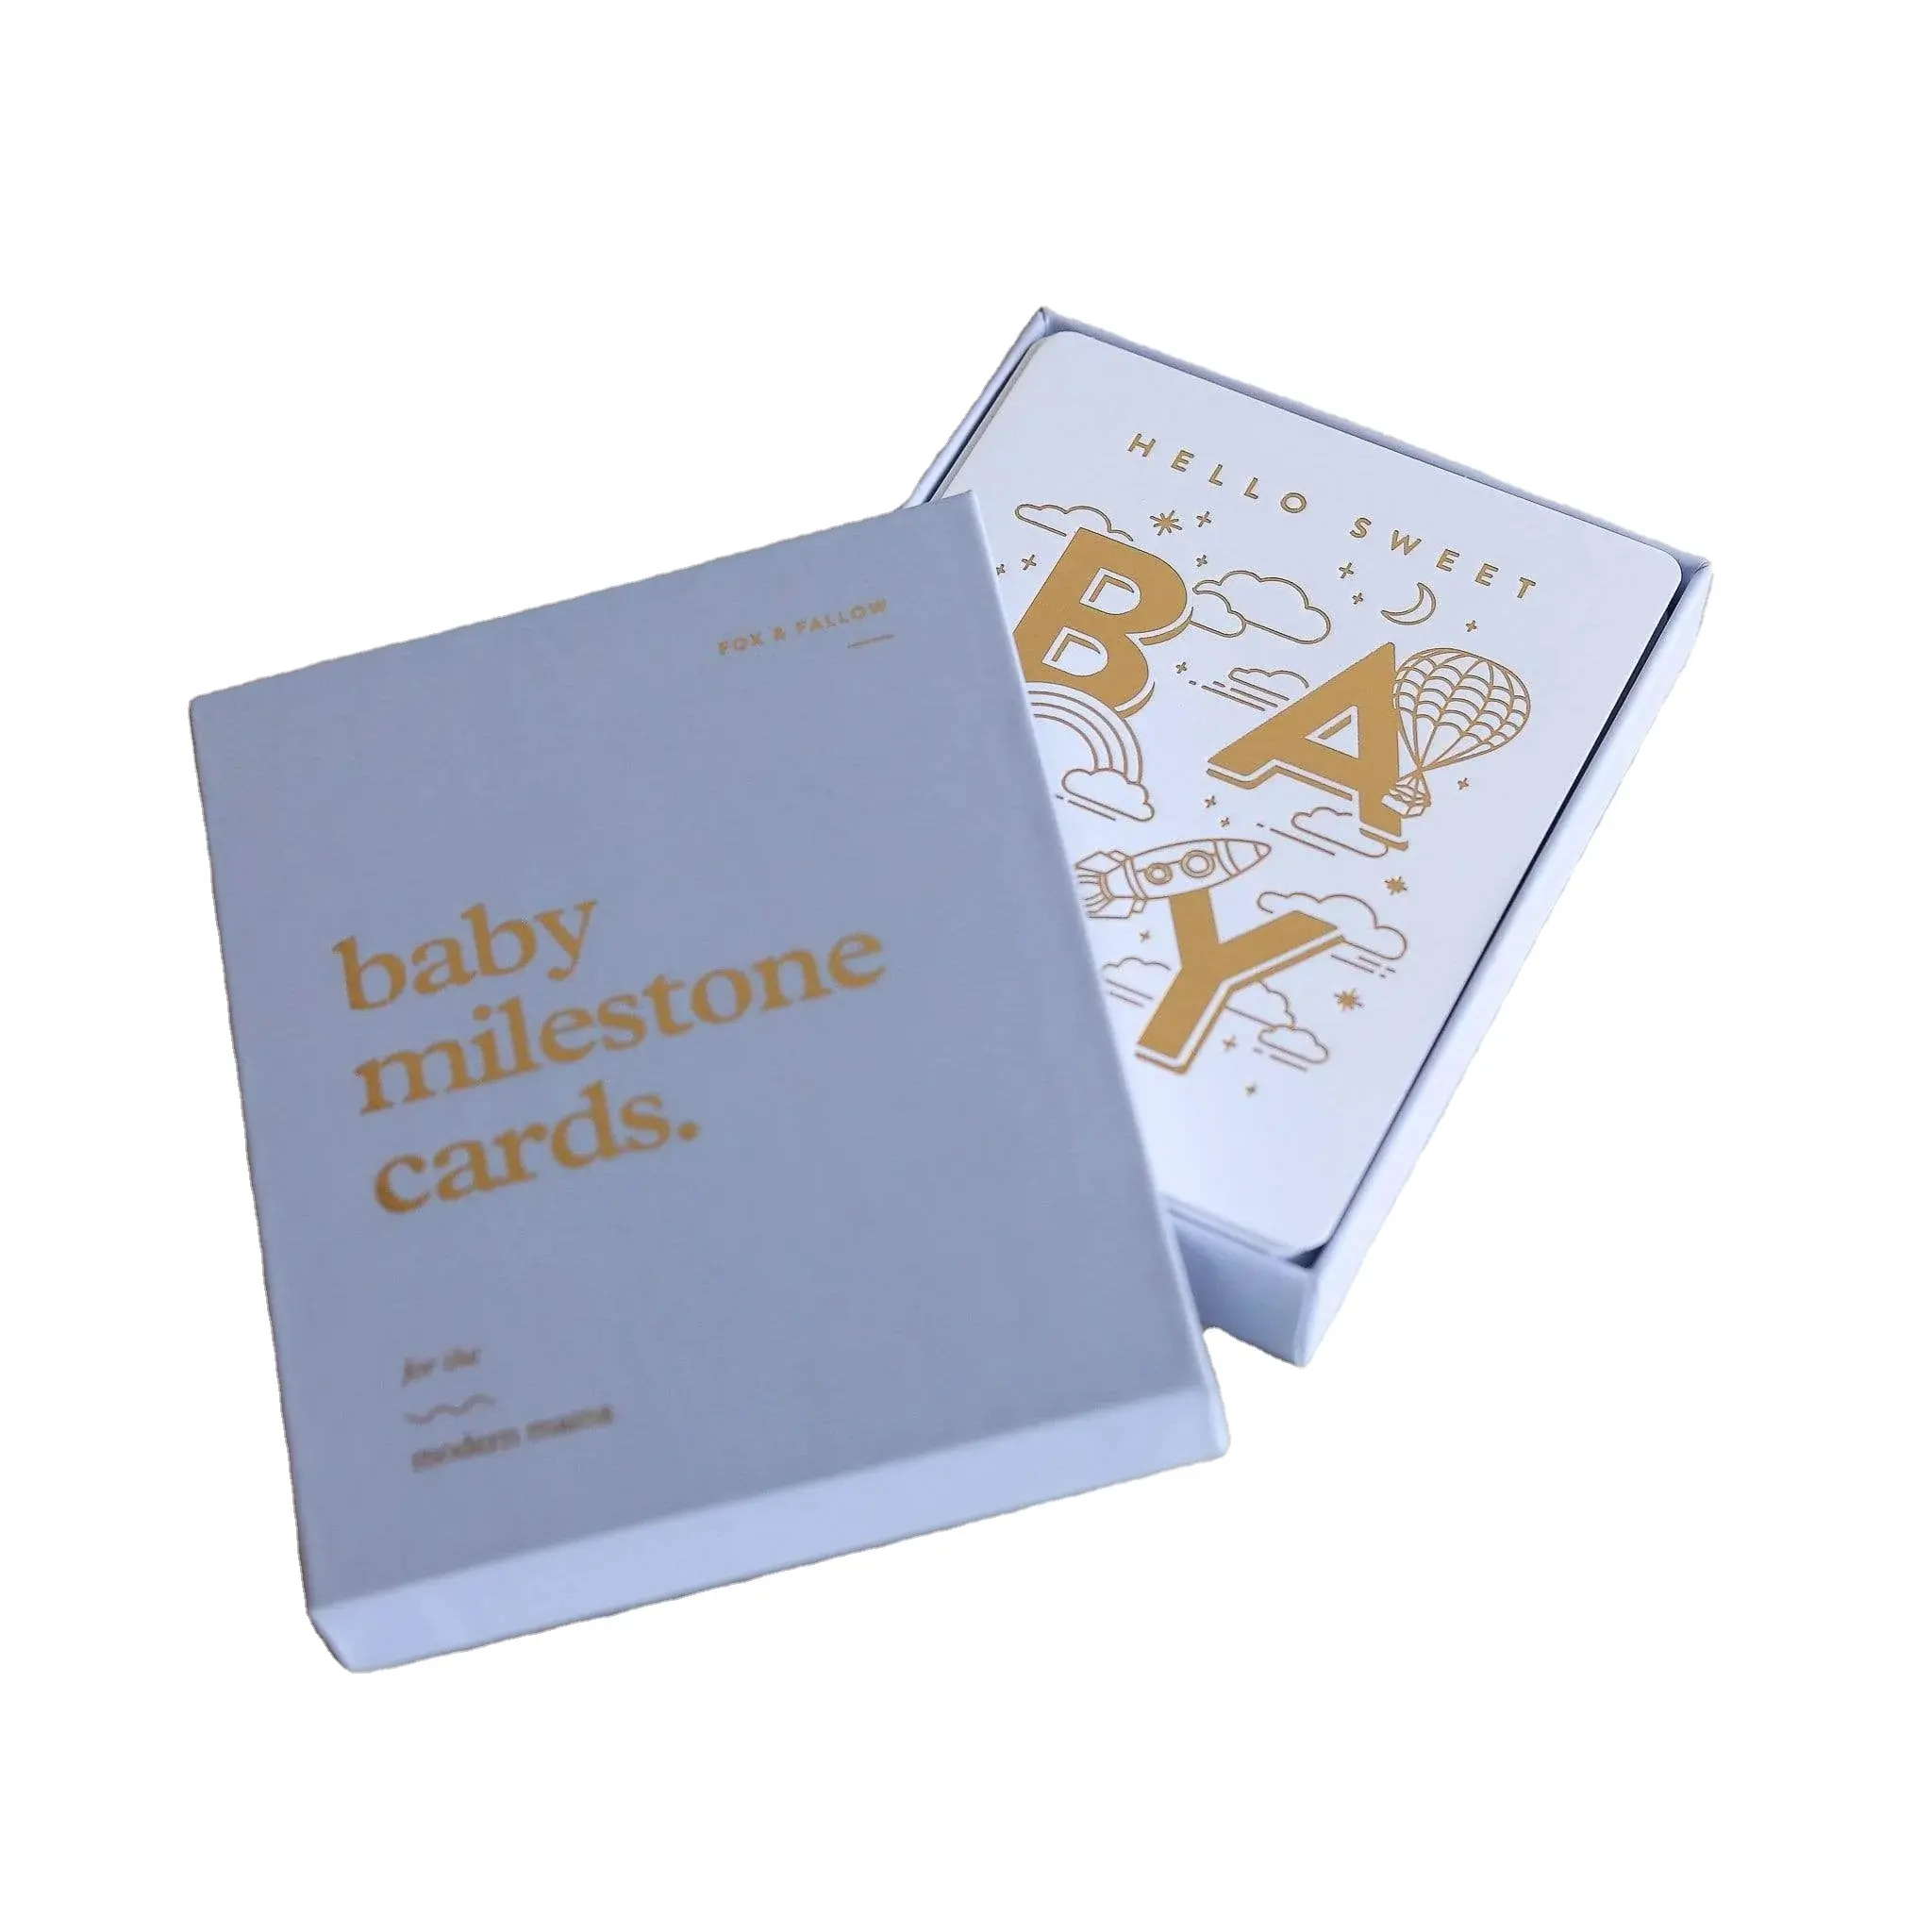 מילות מותאמות אישית מודפס נייר הודעת לידה כרטיס יילוד תינוק מיילסטון כרטיסי מזכרת אריזת מתנה